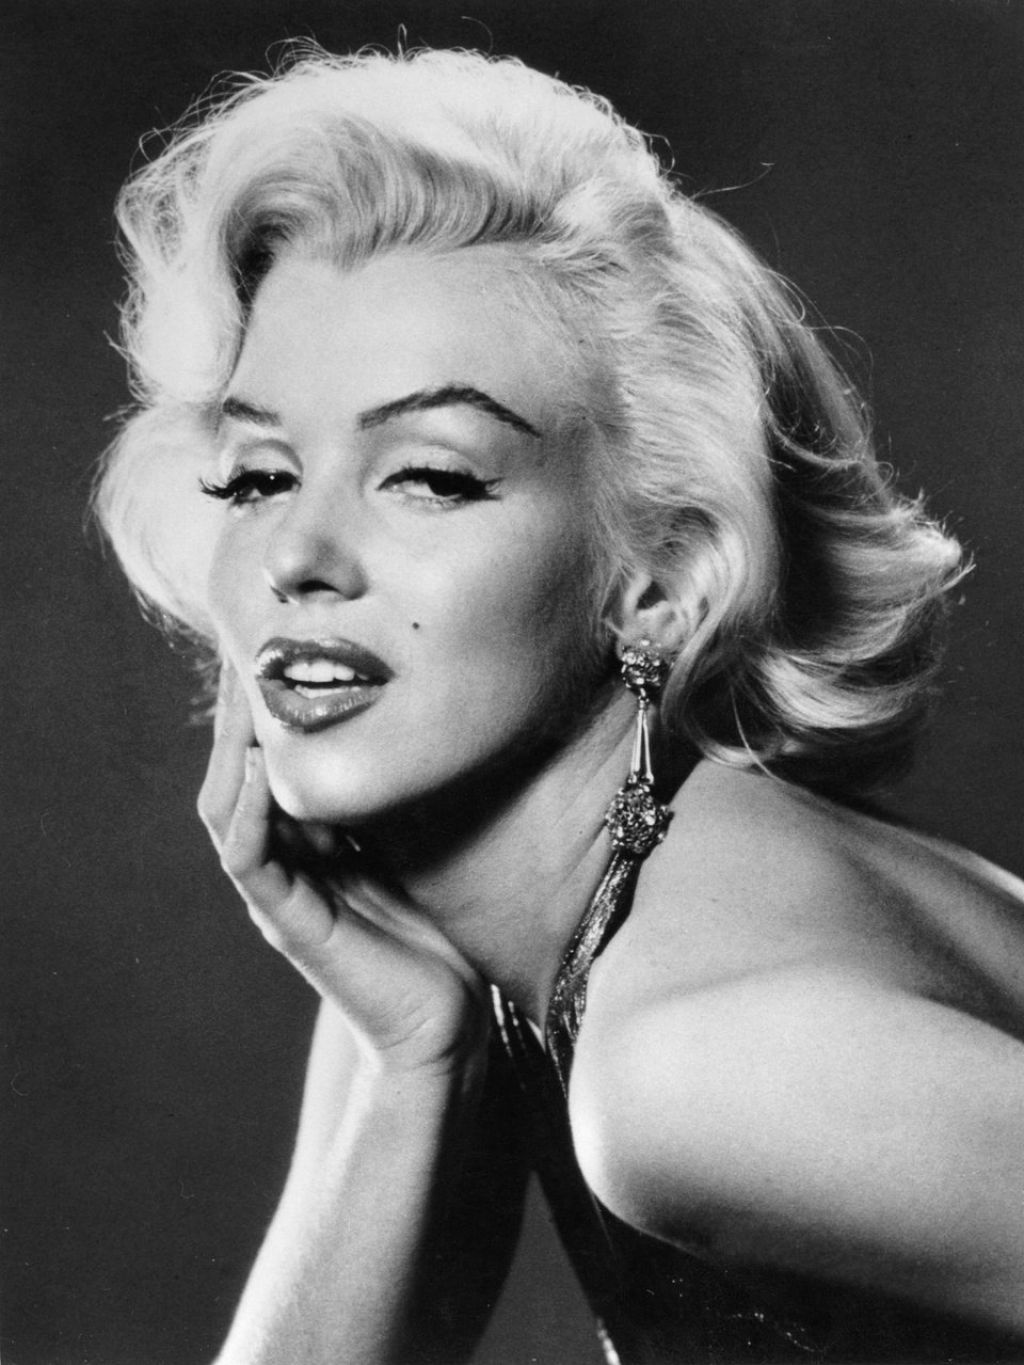 Psihiater – ljubimec in morilec Marilyn Monroe